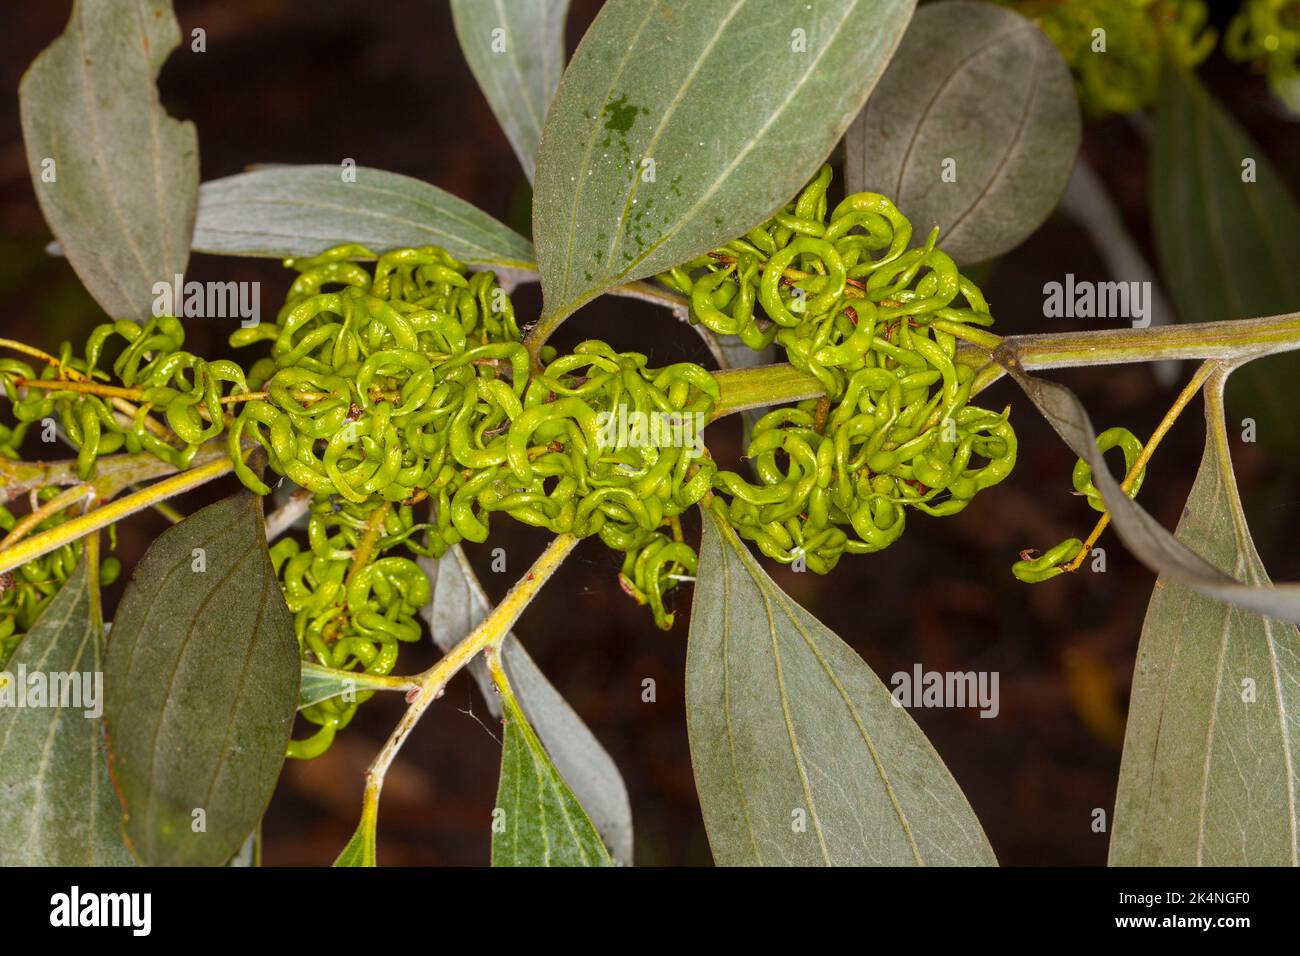 Groupe de gousses de graines vertes enchevêtrées de Velvet Wattle, Acacia holosericea, arbre australien Banque D'Images